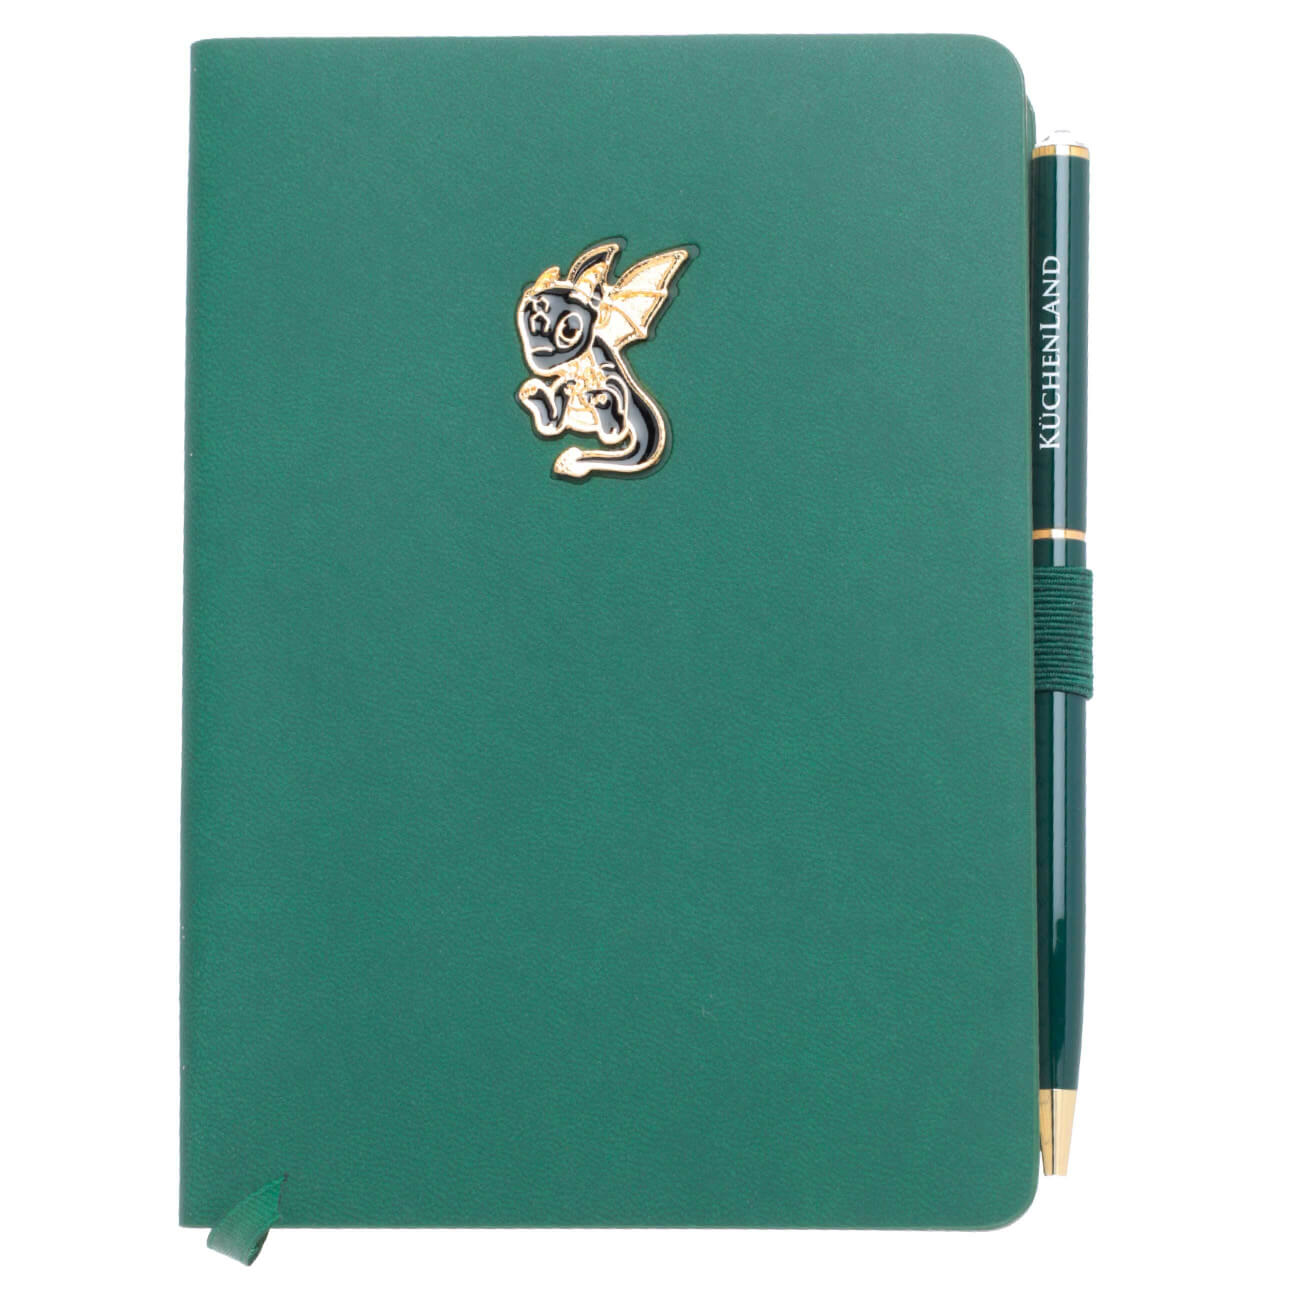 Блокнот для записей, 15х11 см, с ручкой, полиуретан, зеленый, Дракон с крыльями, Dragon spyro блокнот для записей falafel books a5b hansel and gretel